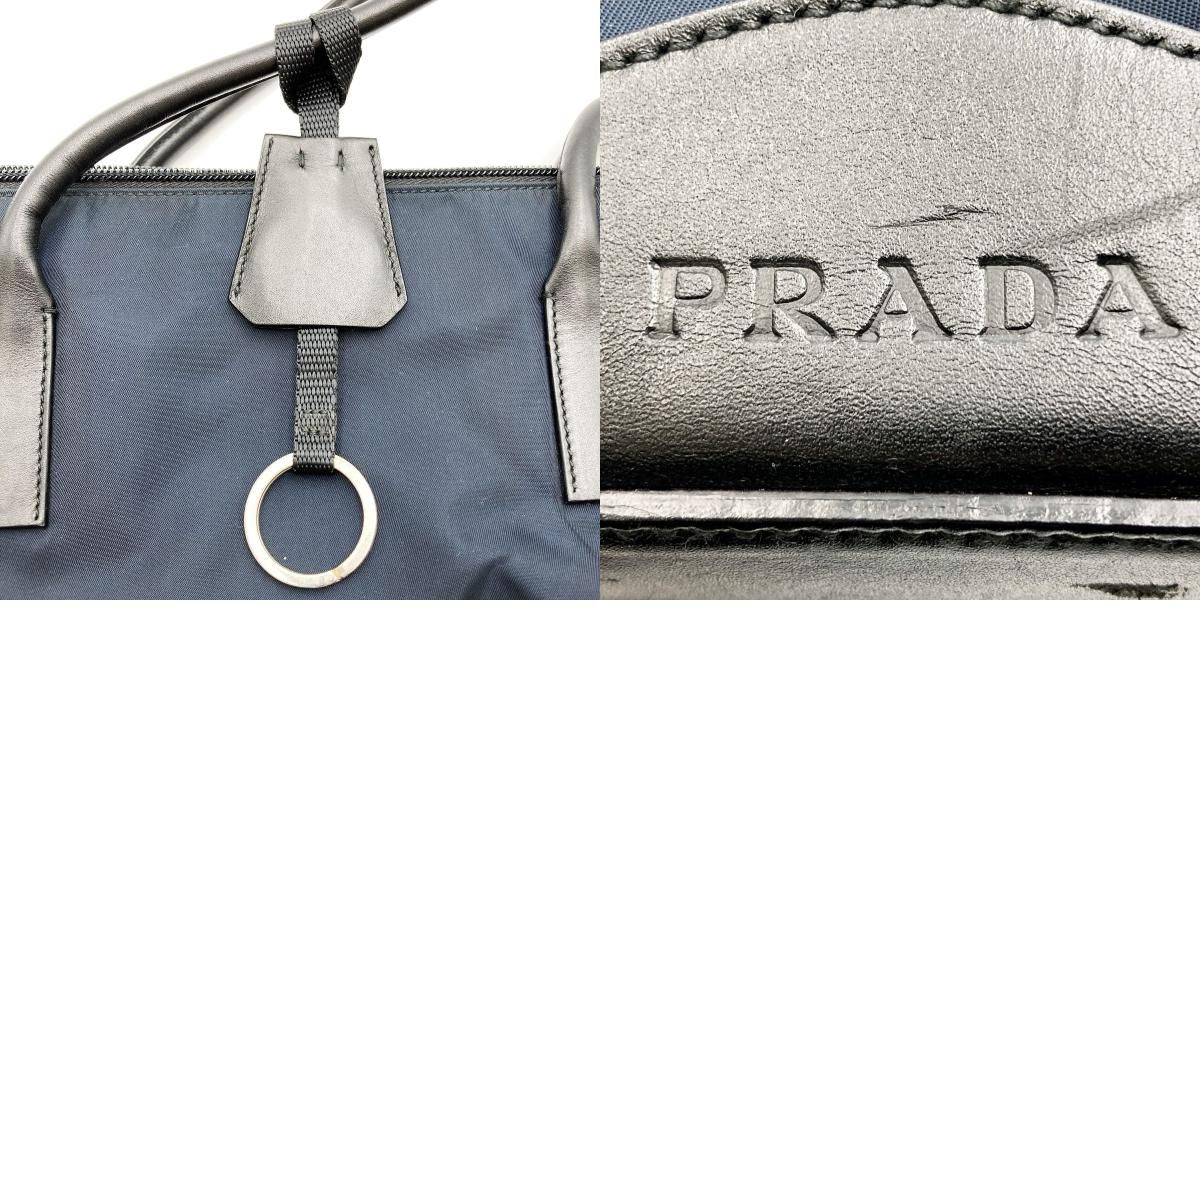 美品 PRADA プラダ ショルダーバッグ トートバッグ 肩掛け バッグ ネイビー ダークネイビー 紺色 ナイロン レディース メンズ ファッション  B10069 USED